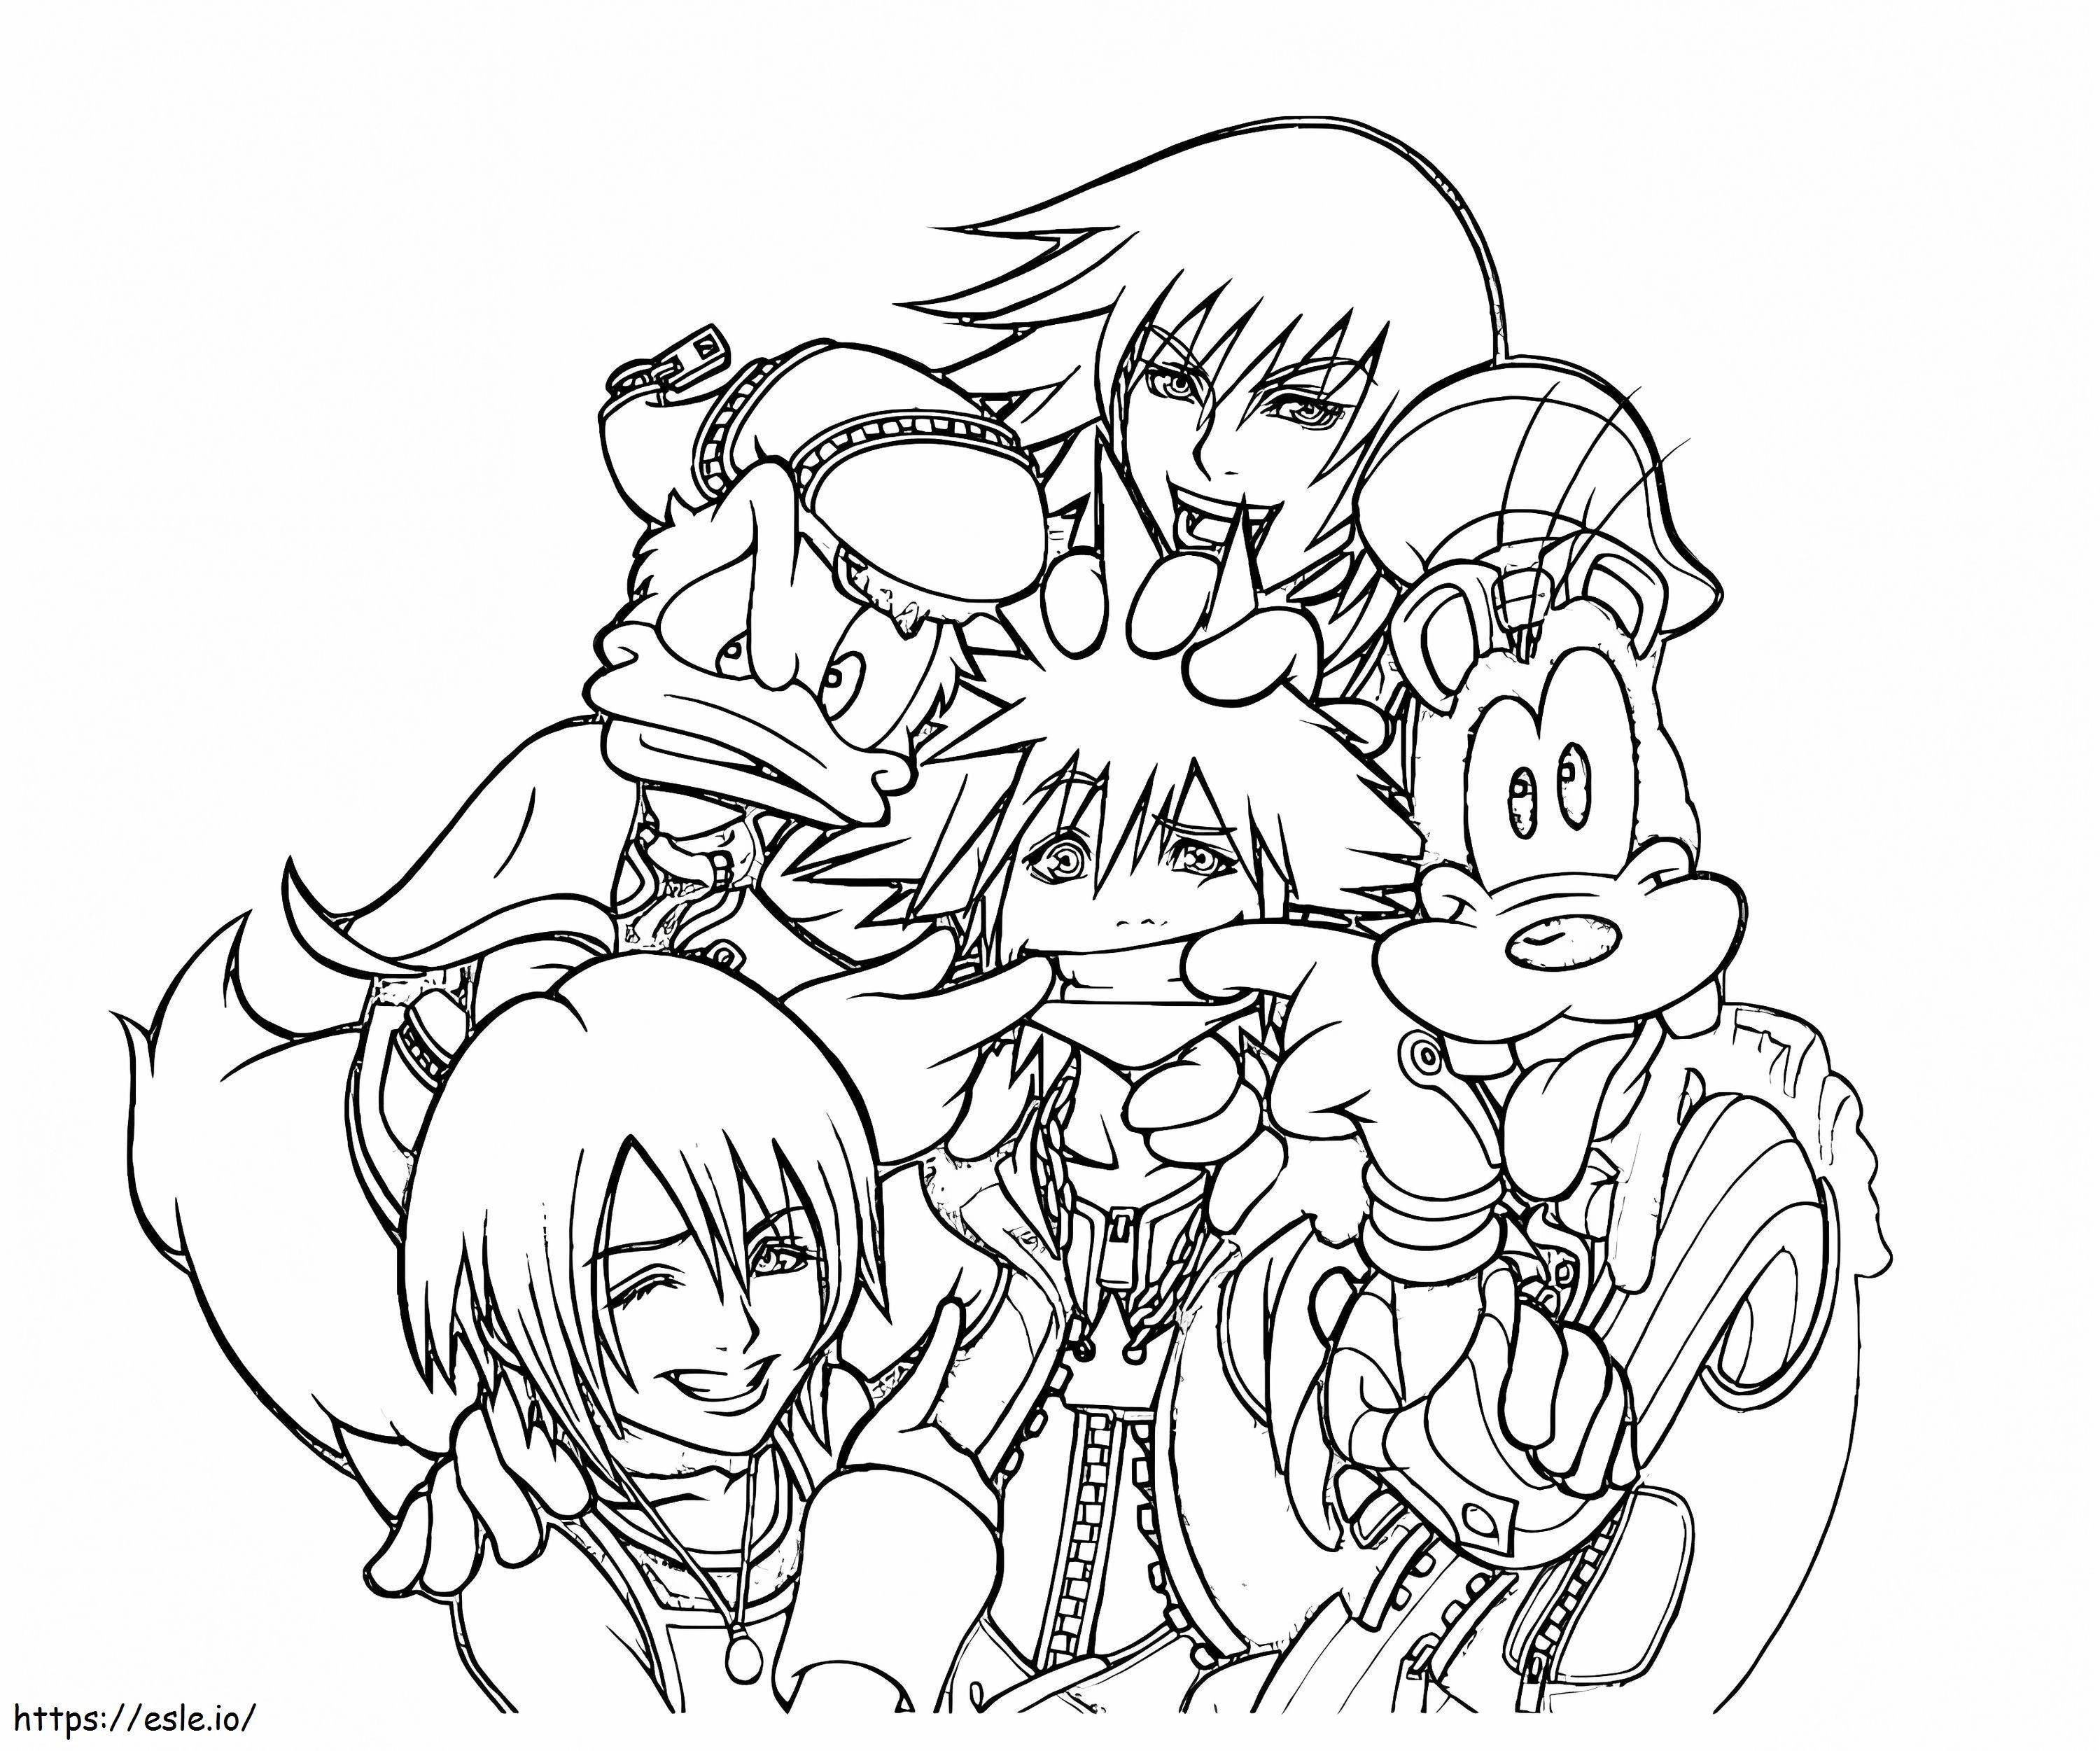 Personajes divertidos de Kingdom Hearts para colorear